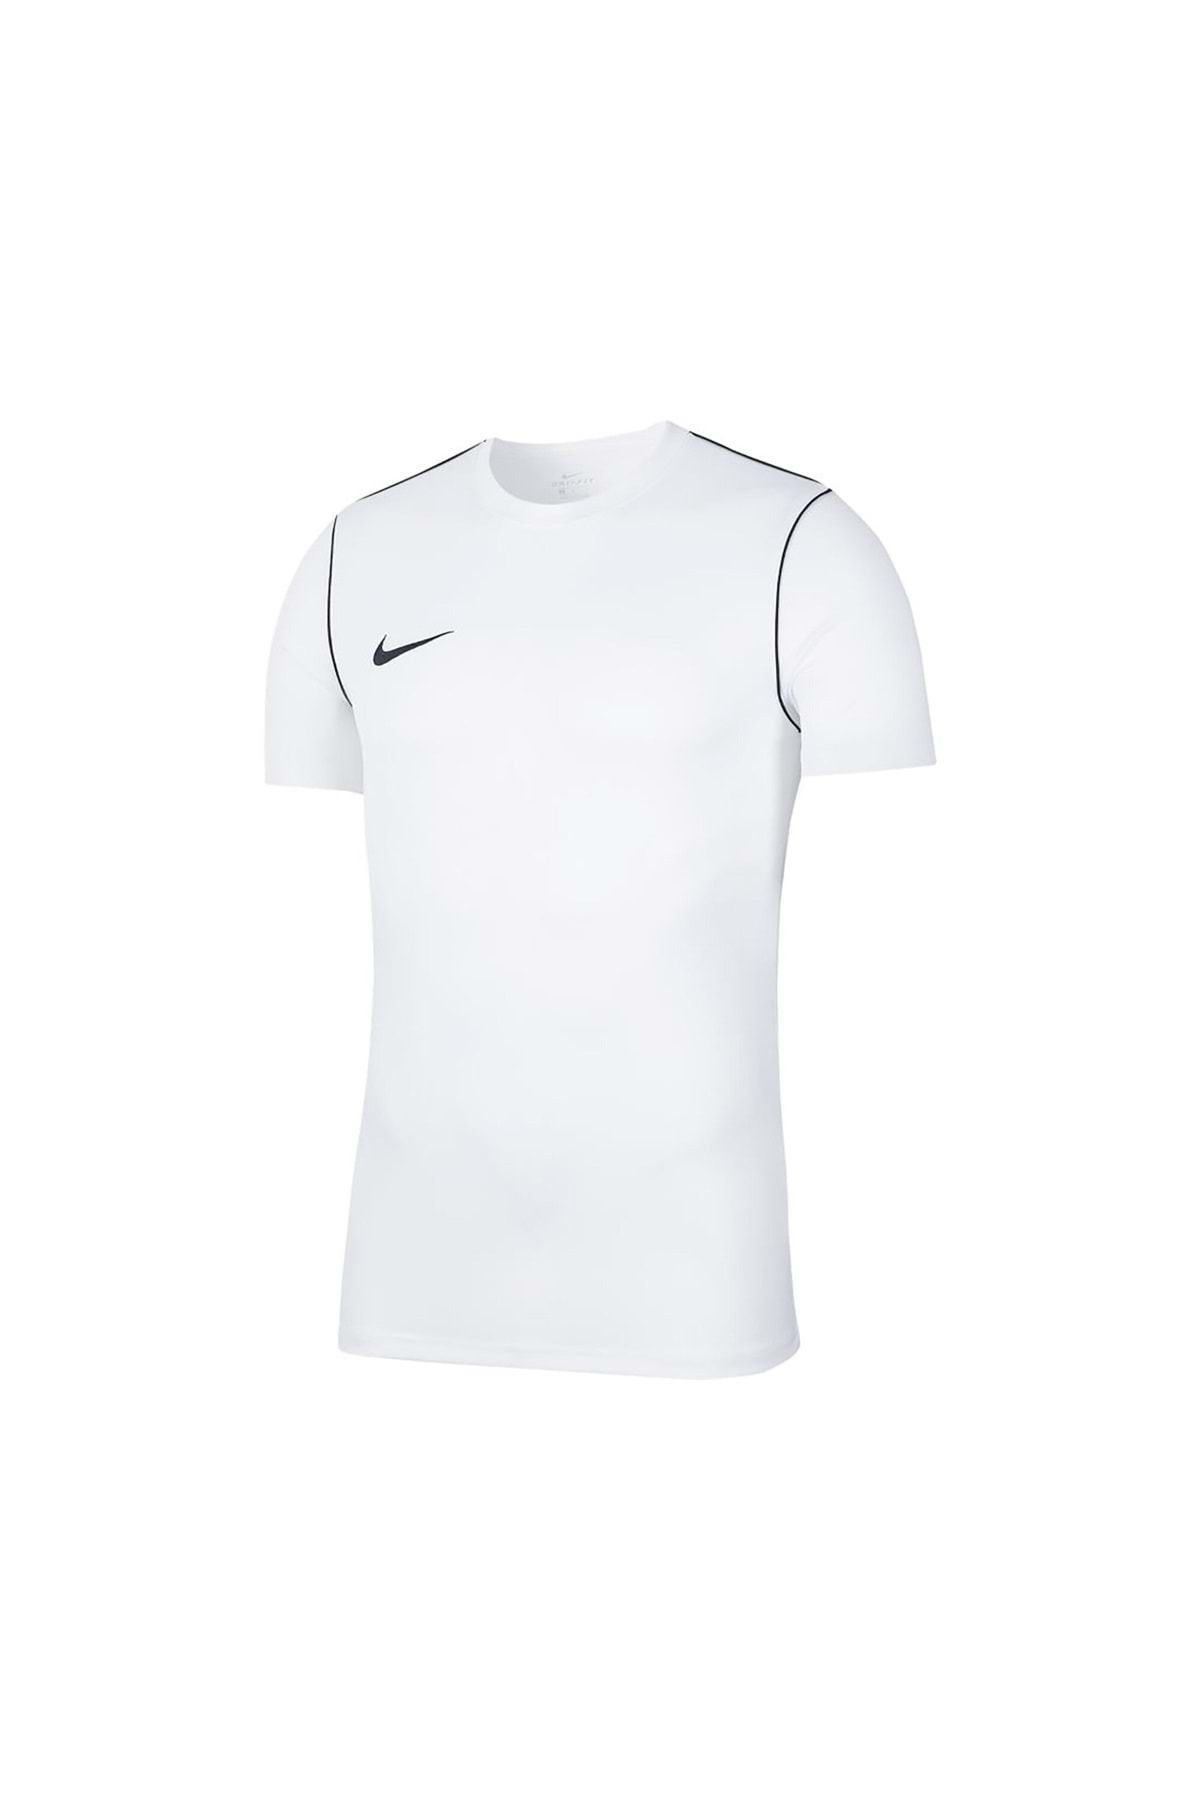 Nike Bv6883-100 Dri-fit Park Polo Tişört Erkek Futbol Forması Beyaz